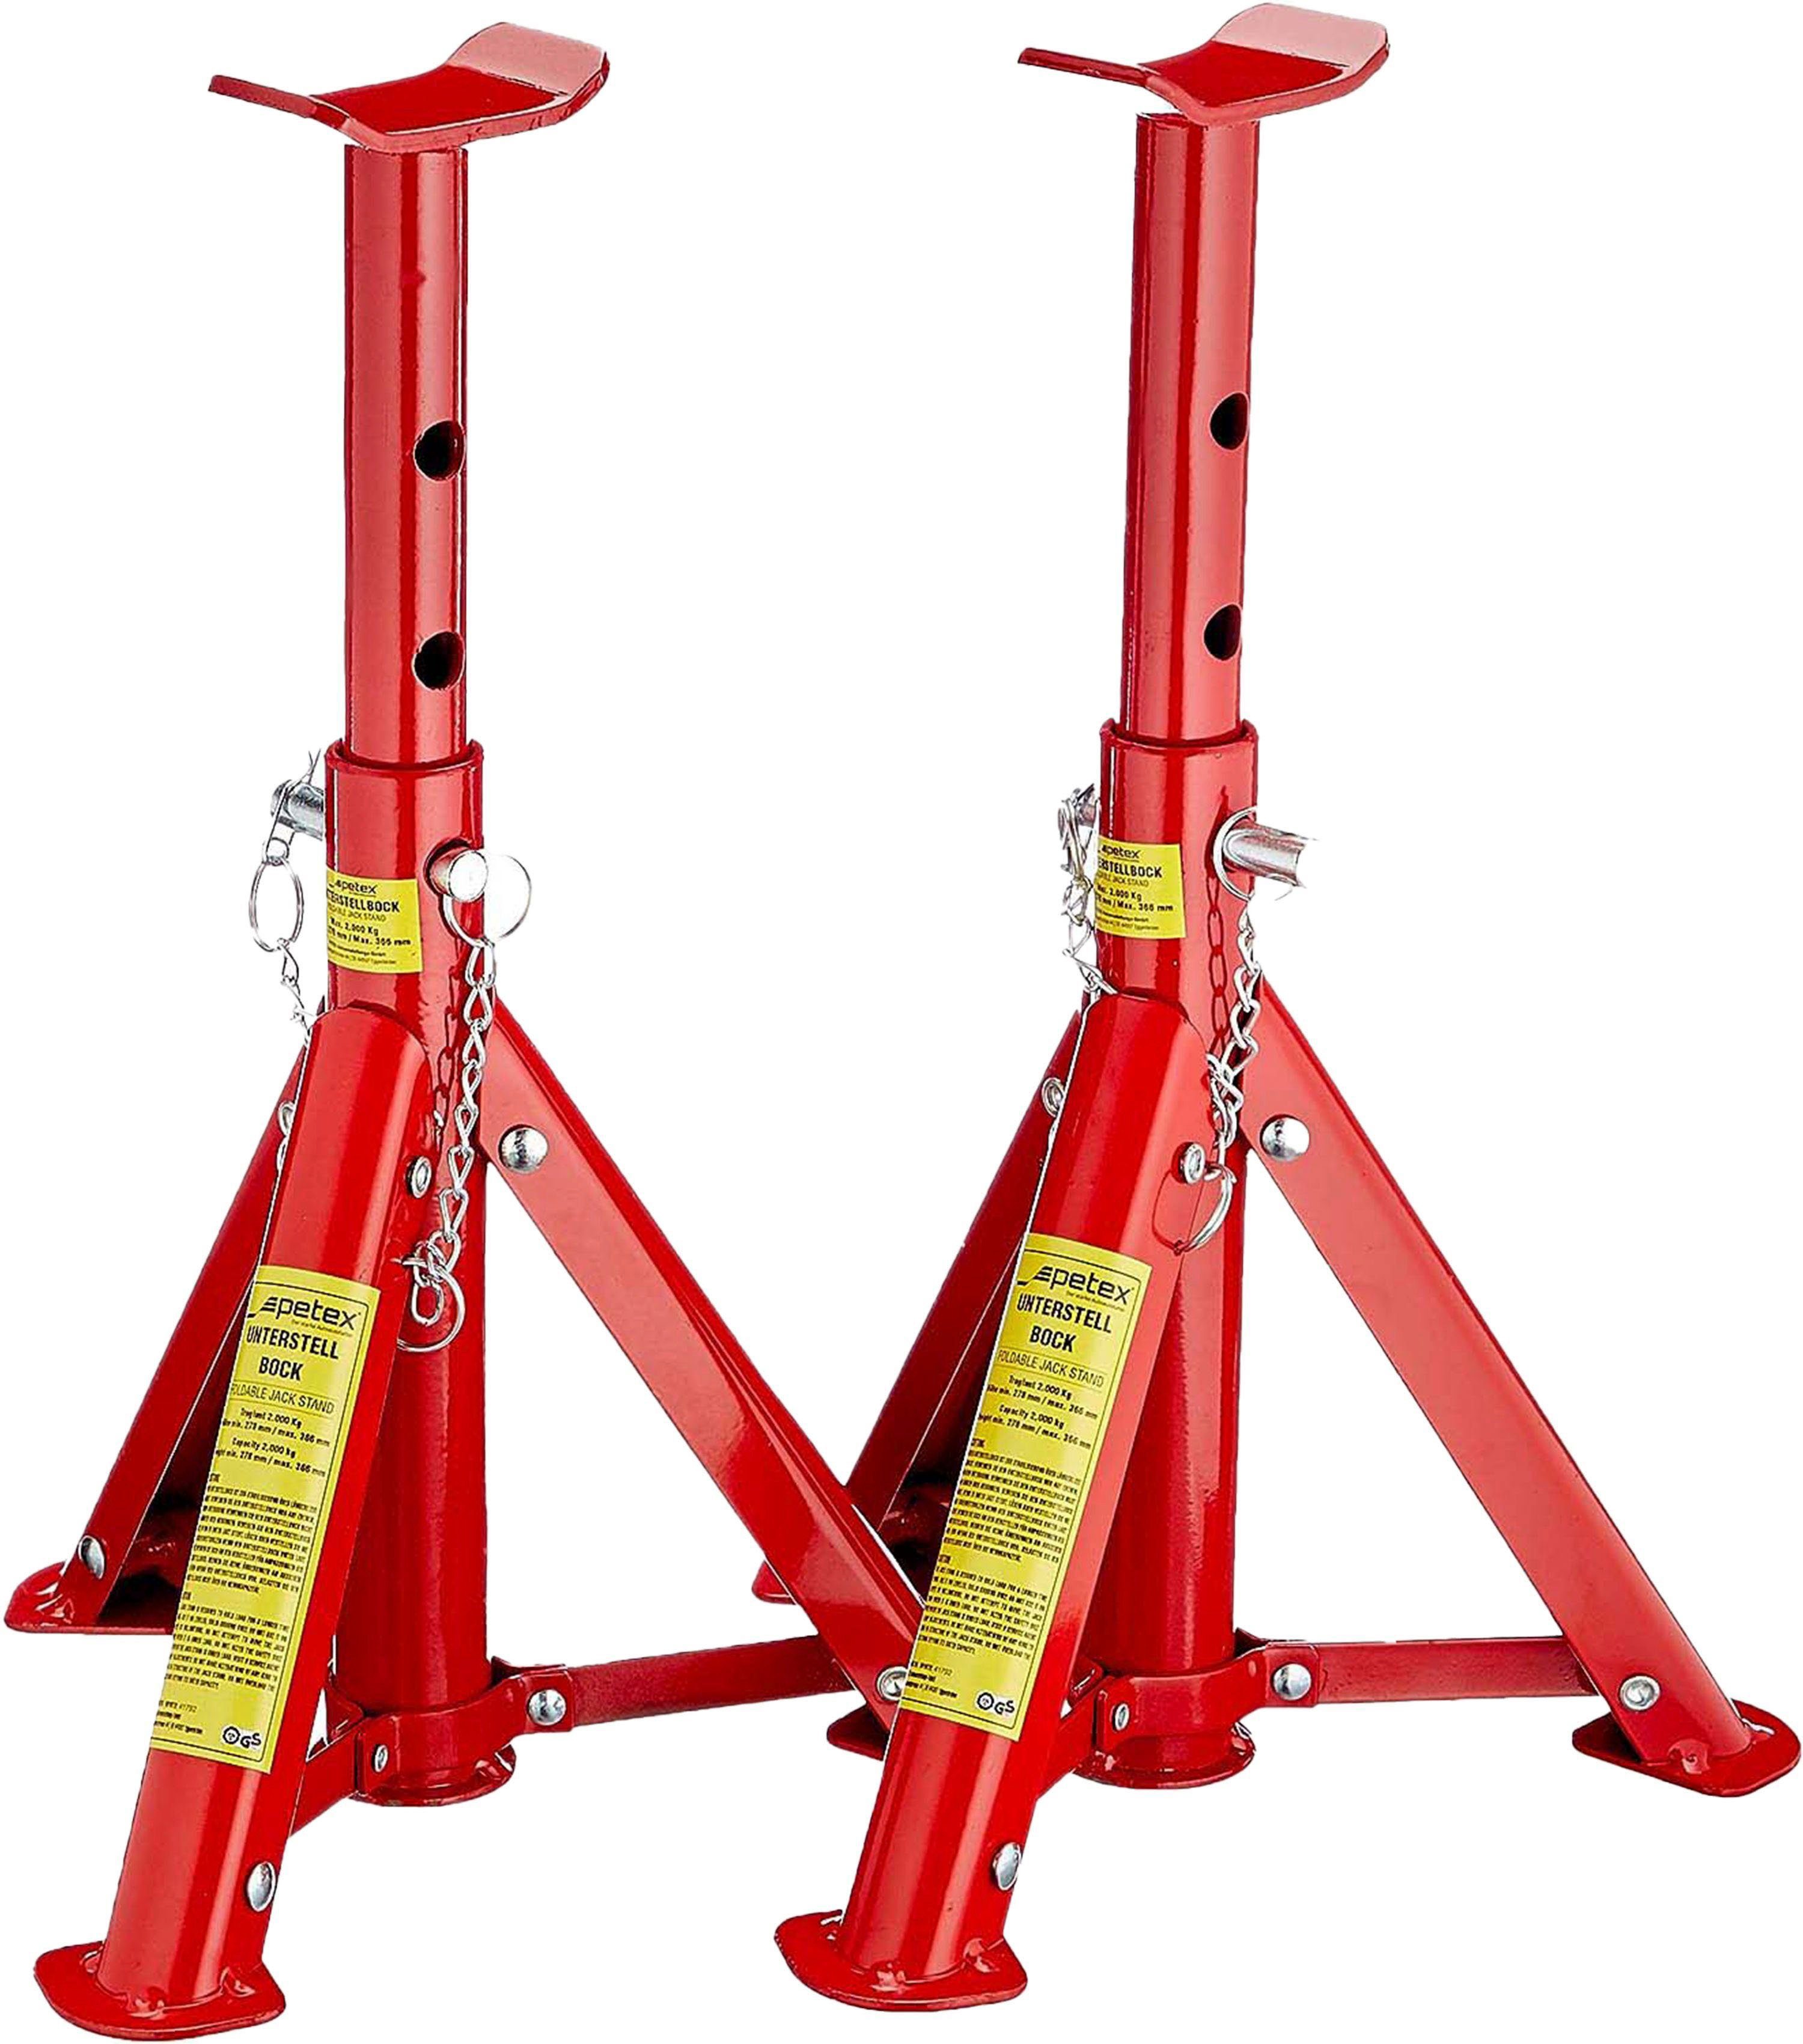 Petex Unterstellbock mit Tragkraft: rot höhenverstellbar 3 Tonnen, Set, und faltbar, Sicherungssplint, 2er